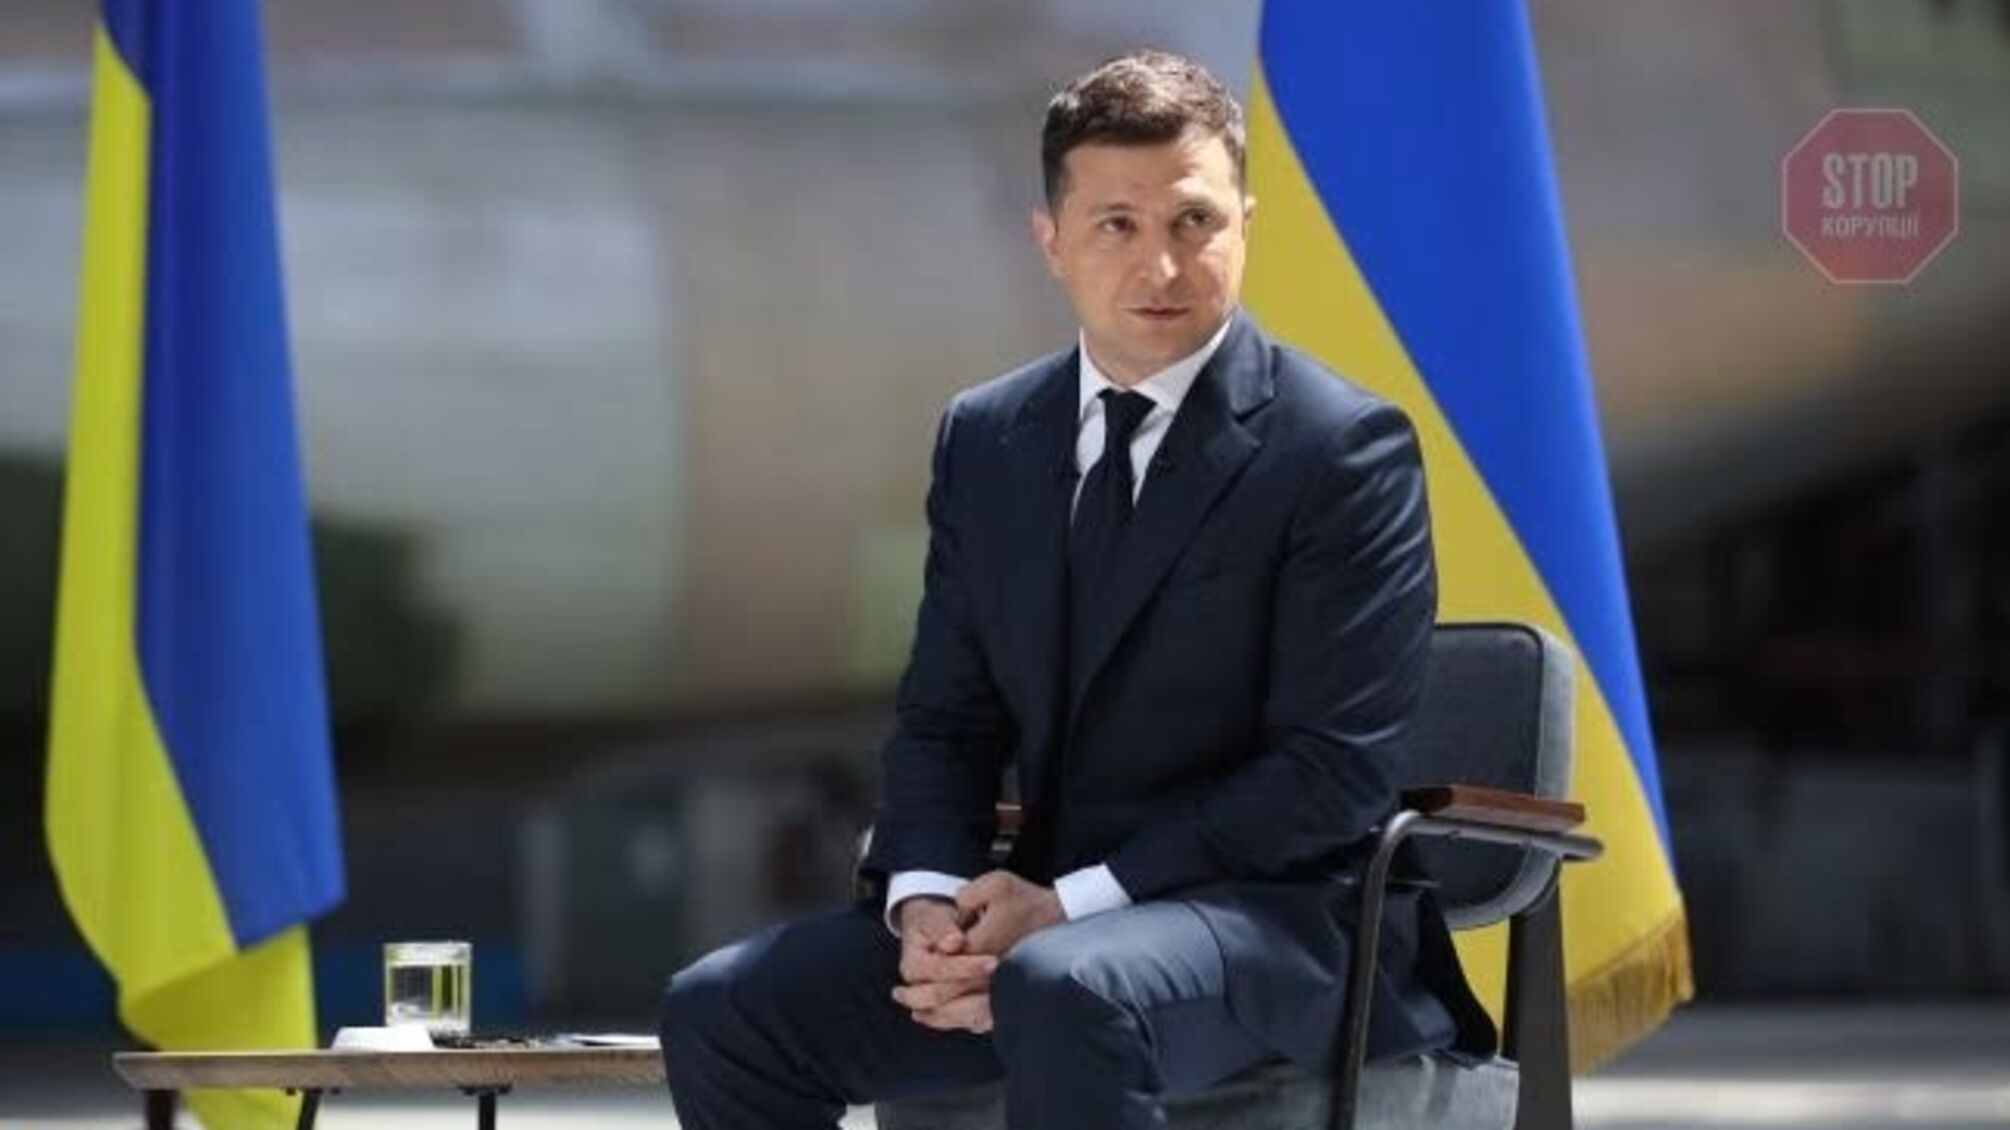 Завтра президент примет участие в презентации концепции празднования Дня Независимости Украины